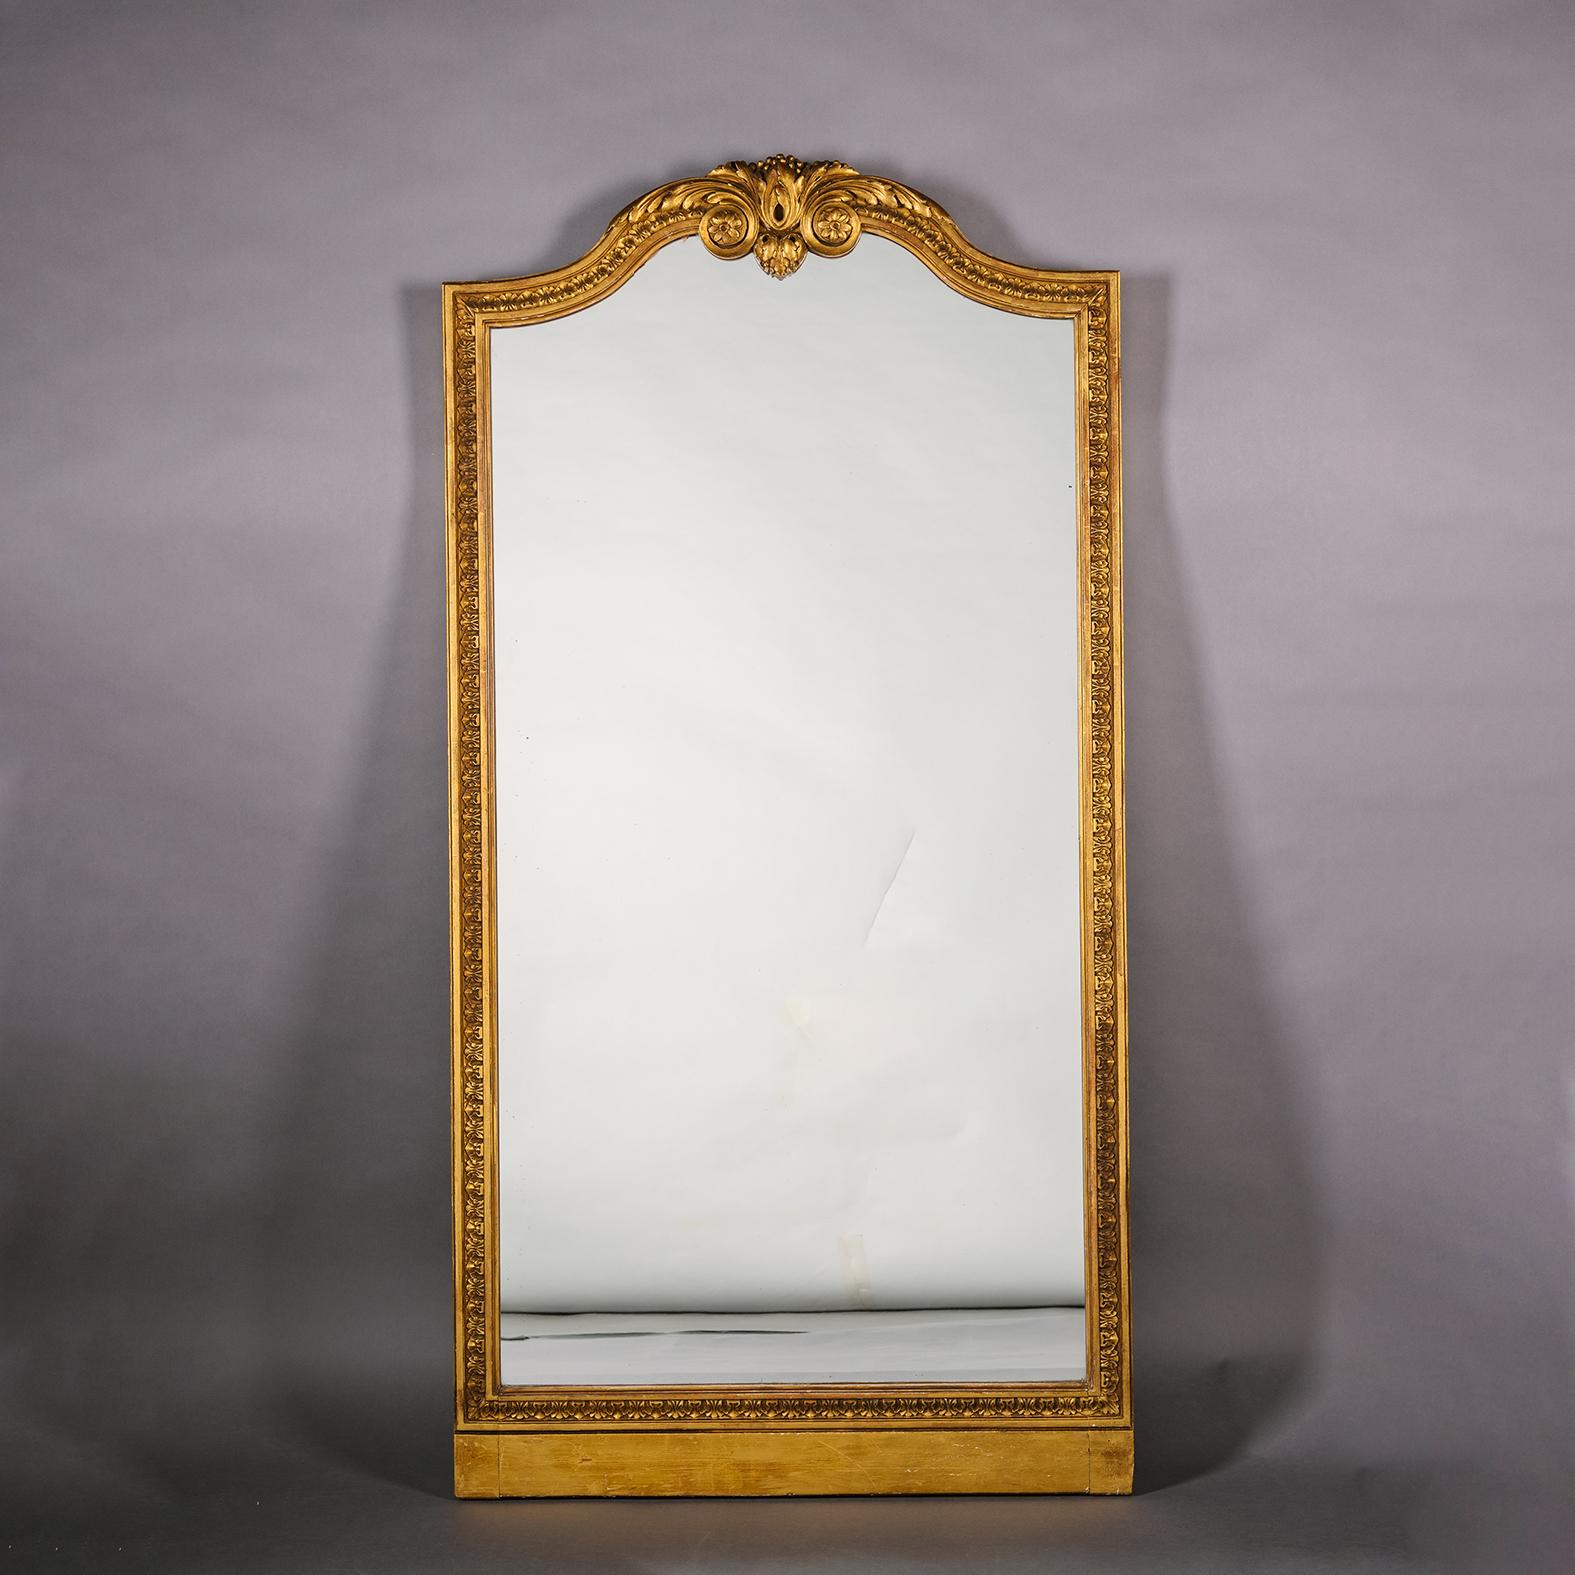 Ein Paar geschnitzte Spiegel aus Giltwood im Louis XVI-Stil. 

Jeder Spiegel hat eine gewölbte Spiegelplatte und einen entsprechenden Rahmen mit geschnitztem Blattdekor und einem gewölbten Giebel, der von einer Akanthusvolute mit Fransen umgeben